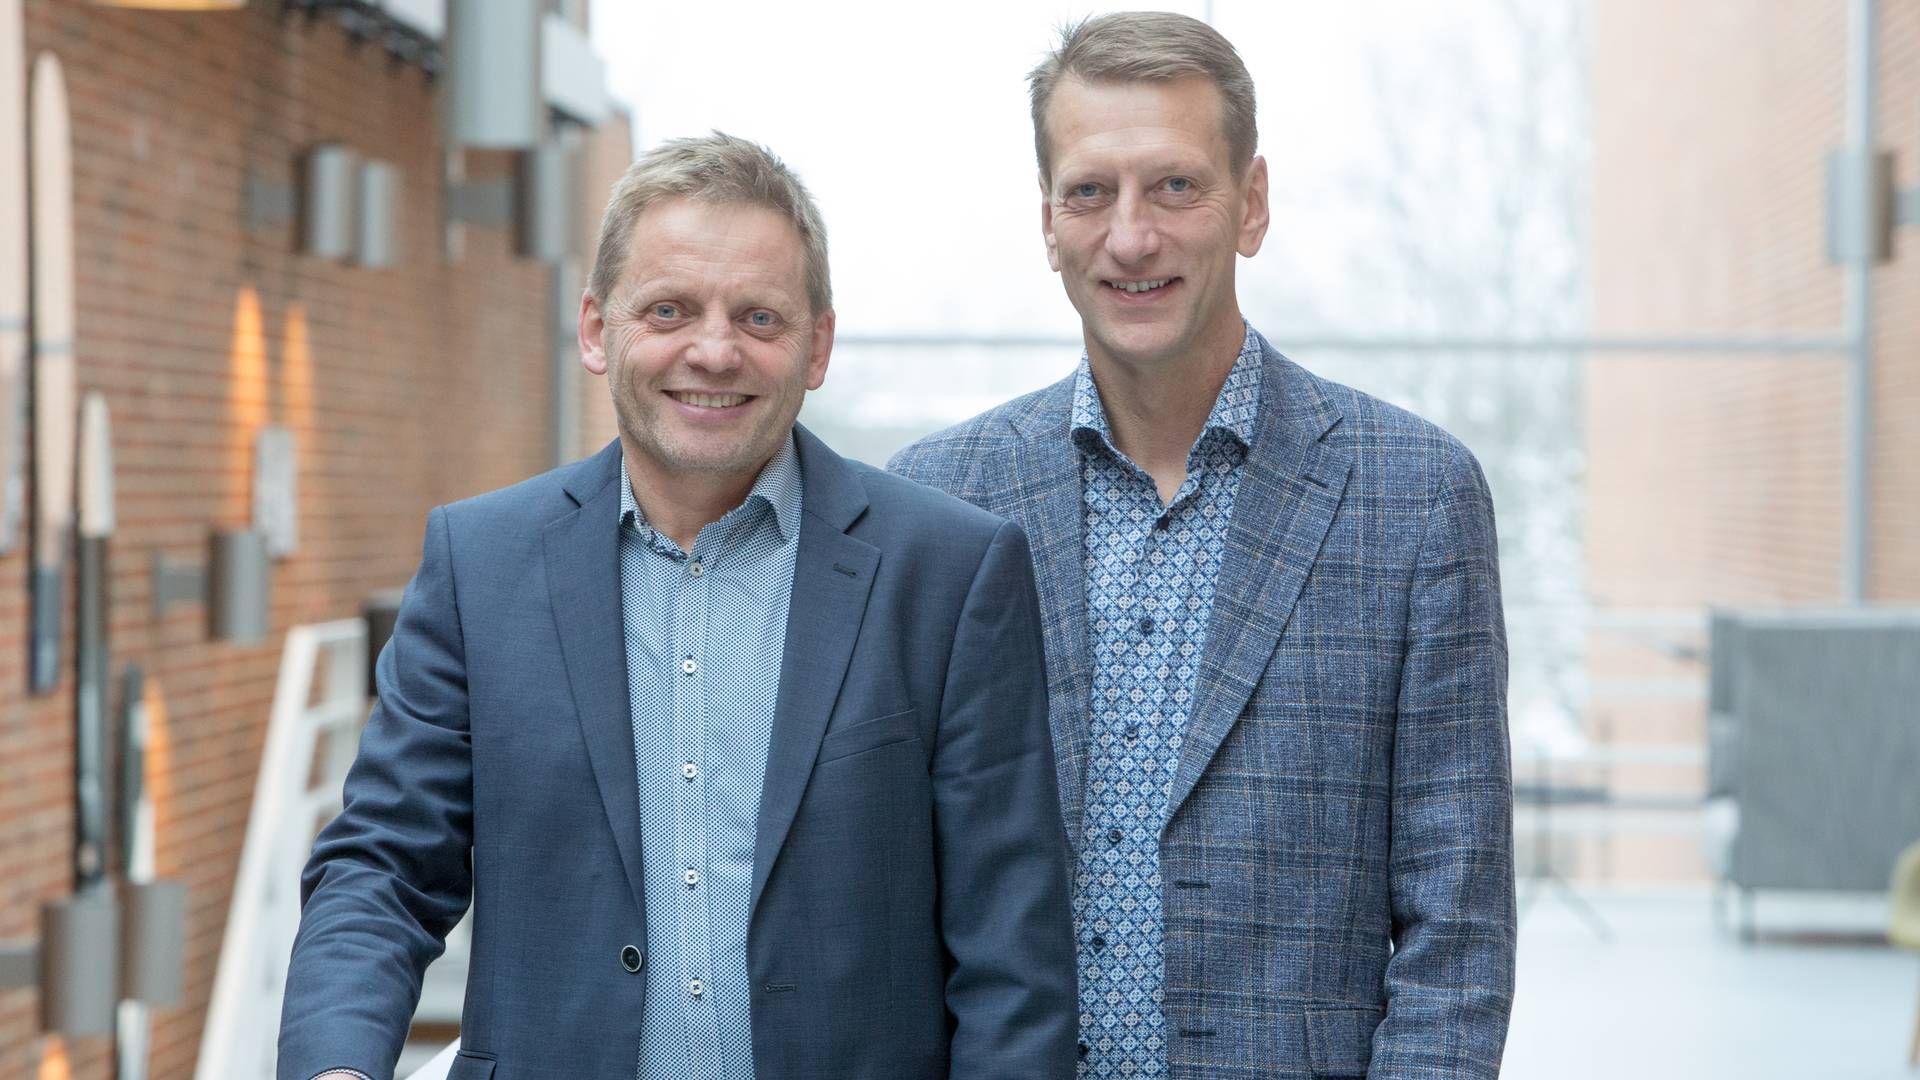 Formand Søren F. Overgaard (til venstre) og direktør Uffe Wiborg (til højre) | Foto: Dangris / PR